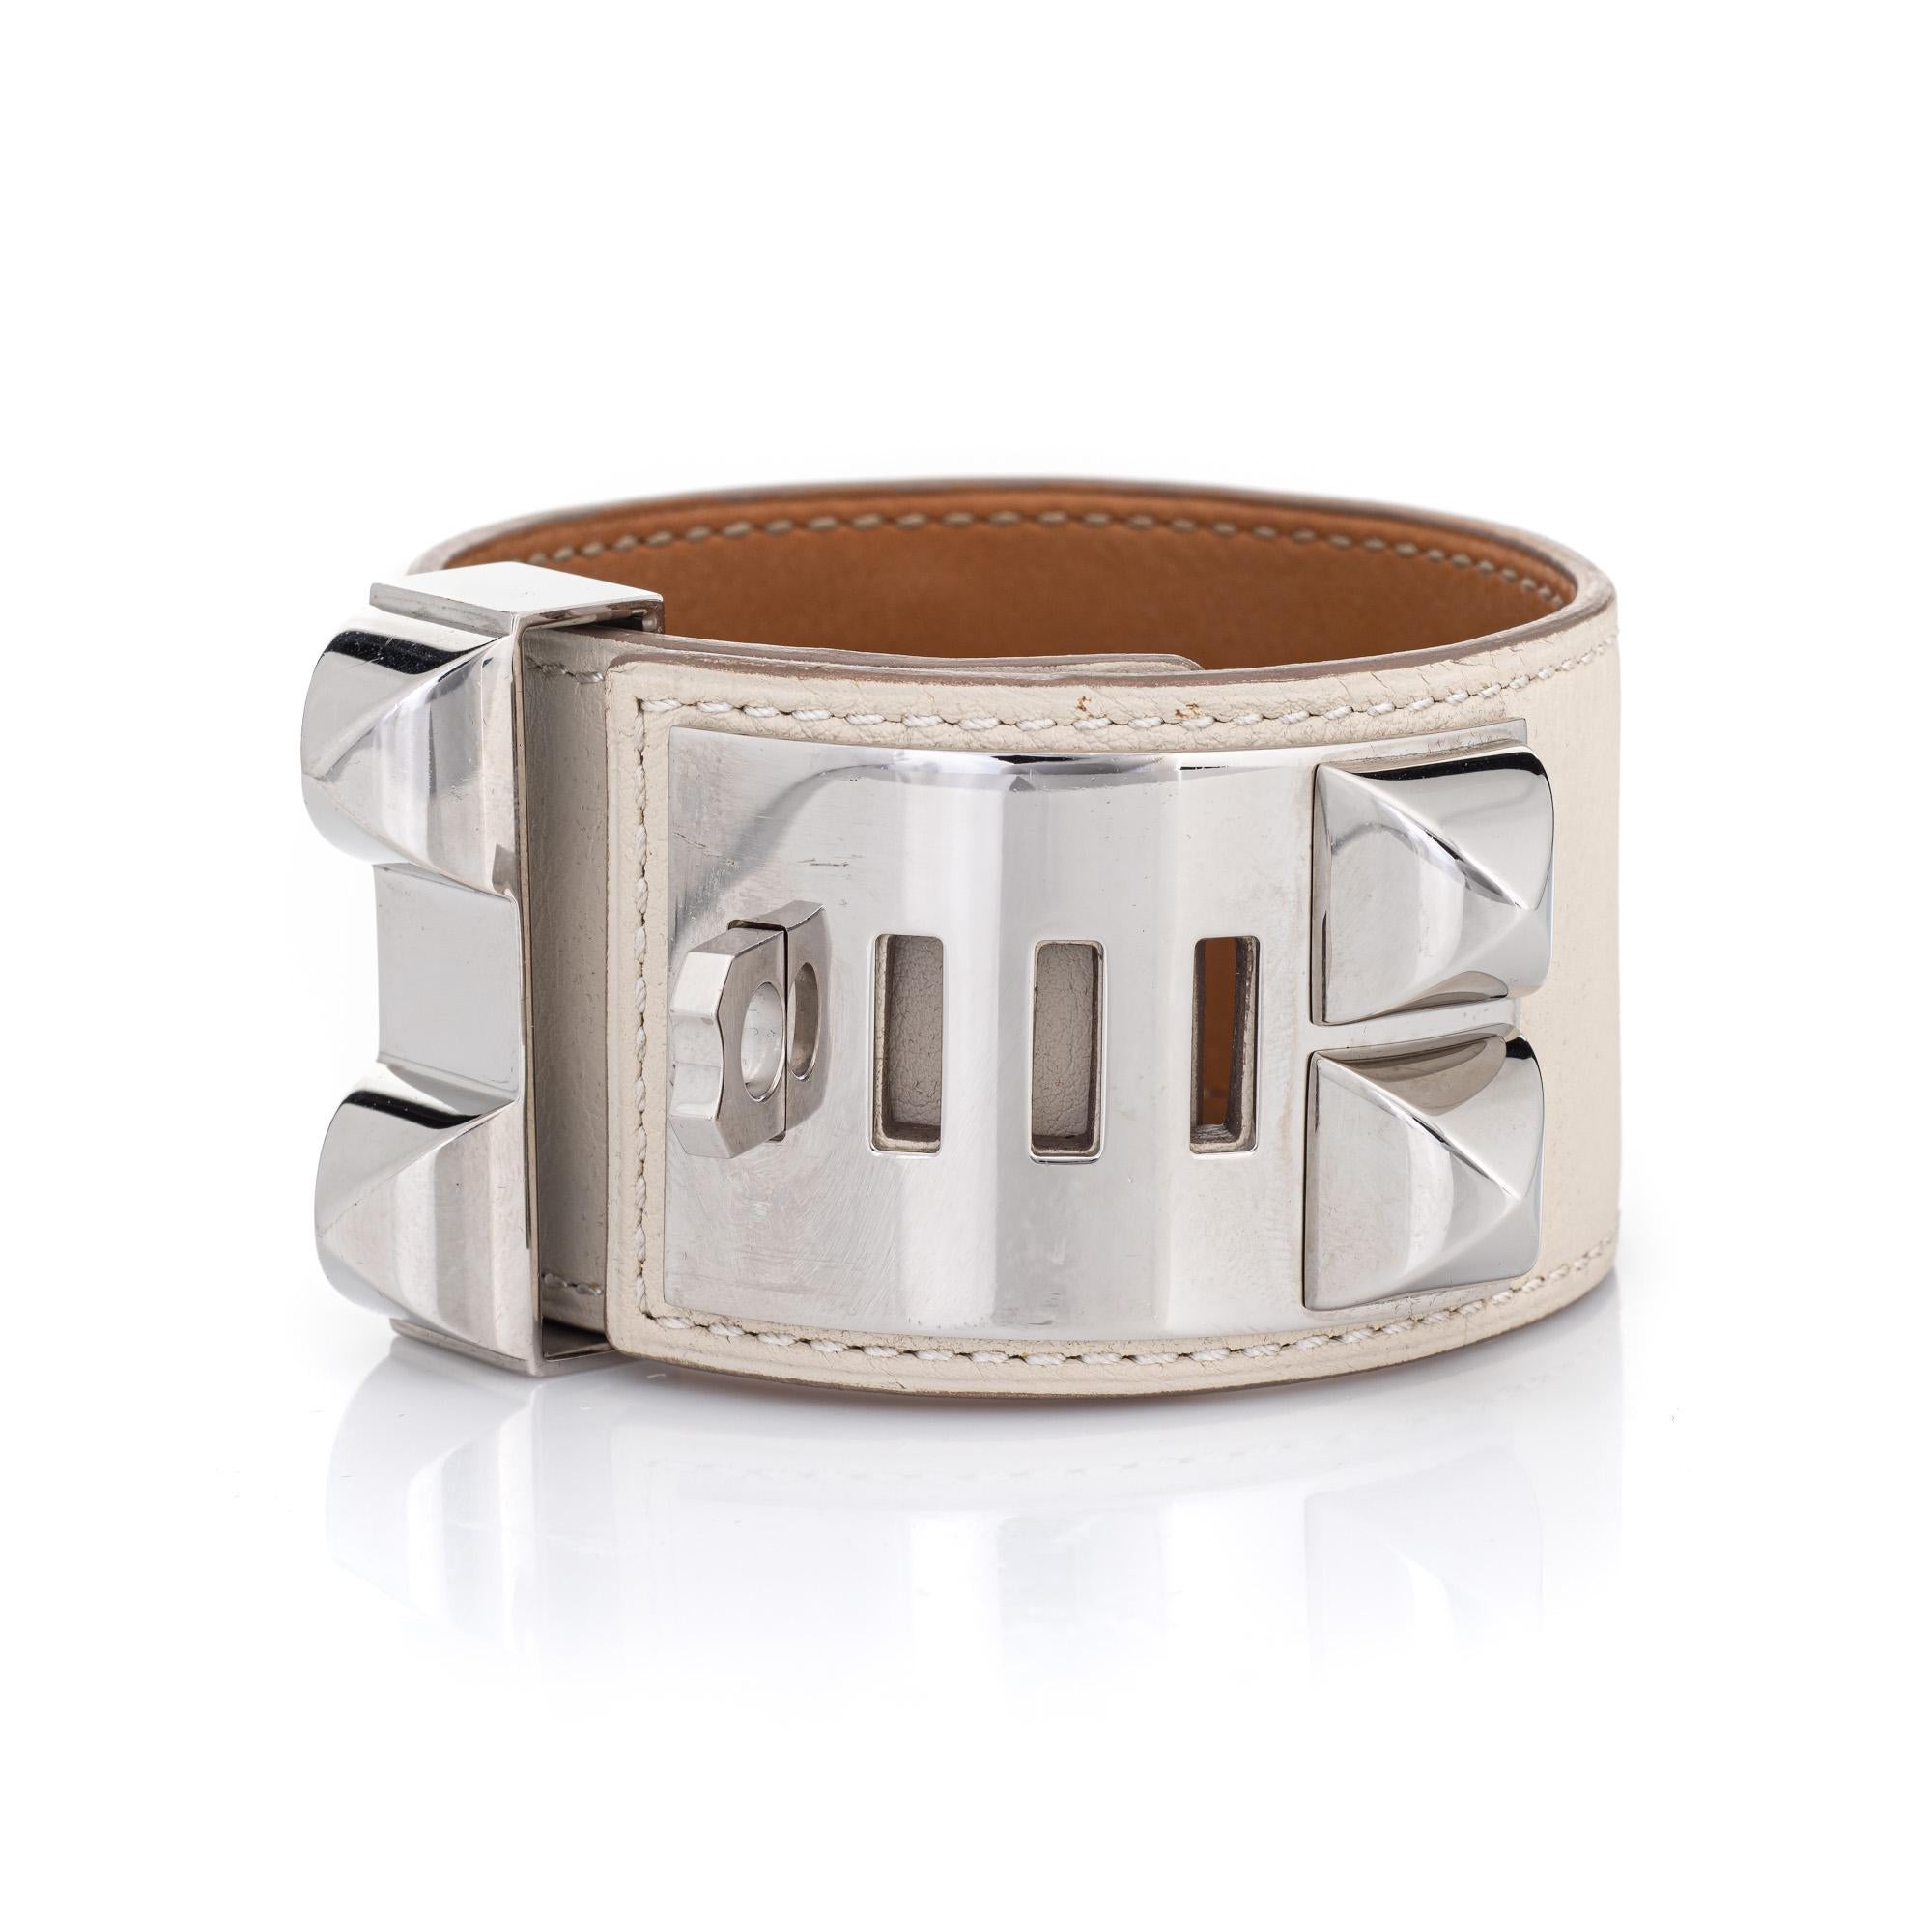 Vue d'ensemble :

Bracelet manchette Hermès Collier de Chien en cuir blanc d'occasion, doté d'un mécanisme plaqué palladium. La pochette de voyage Hermès en feutre brun est également incluse. 

Le bracelet large de 1,50 pouce présente une longueur